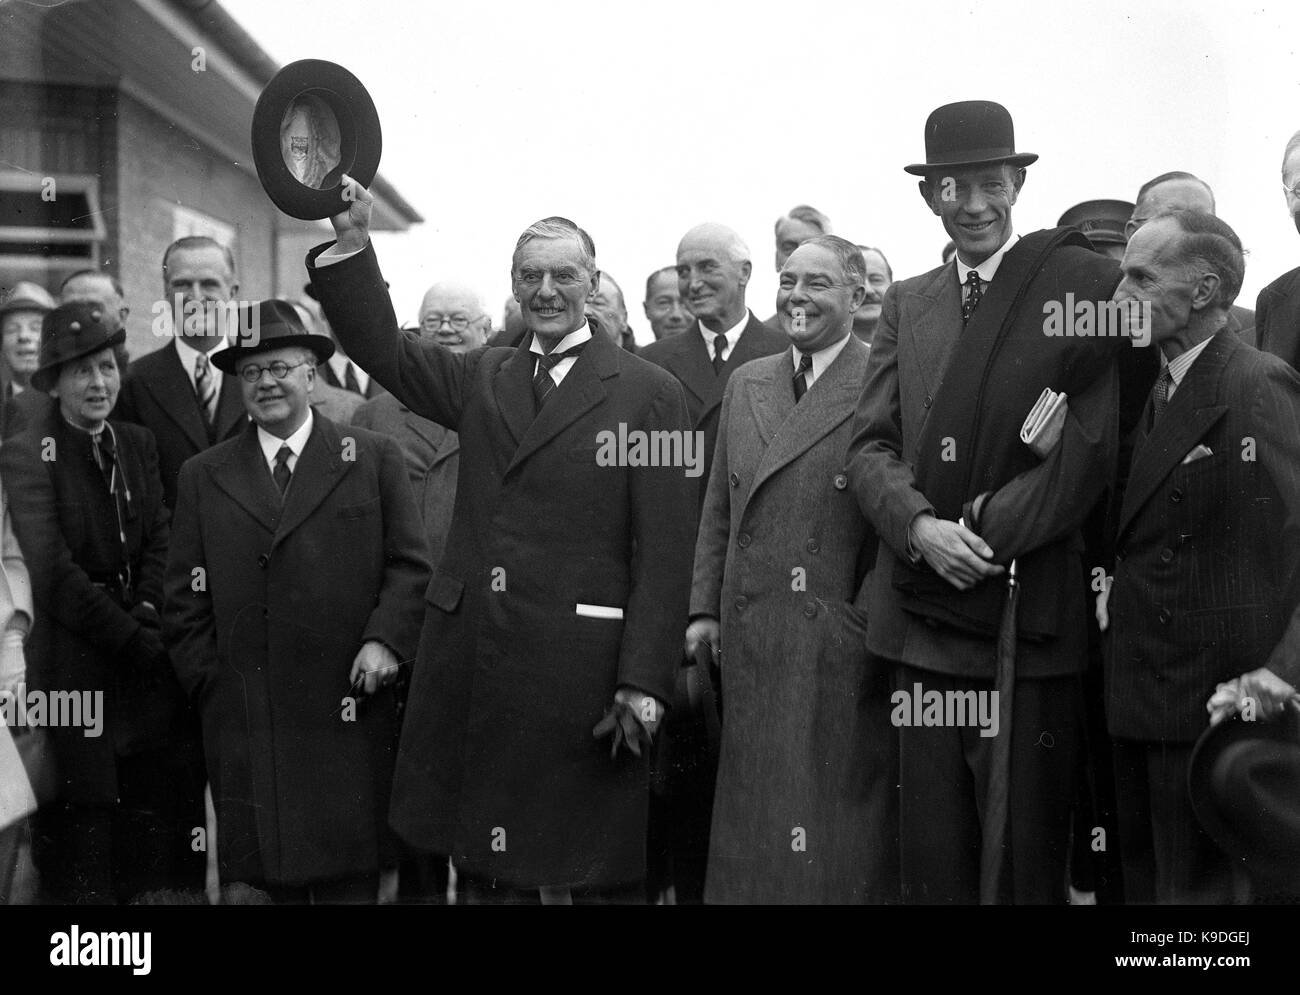 Der britische Premierminister Neville Chamberlain verlassen für seinen Gipfel mit dem Reichskanzler Adolf Hitler in München. Premierminister Chamberlain mit dem Papier unterzeichnet von Hitler und klemmt sich selbst aus seiner Tasche nach der Erklärung zu der wartenden Menge "Frieden in unserer Zeit" 3. Oktober 1938. Mit ihm sind Sir Kingsley Holz, Leslie Hore-Belisha, Lord Halifax. Stockfoto